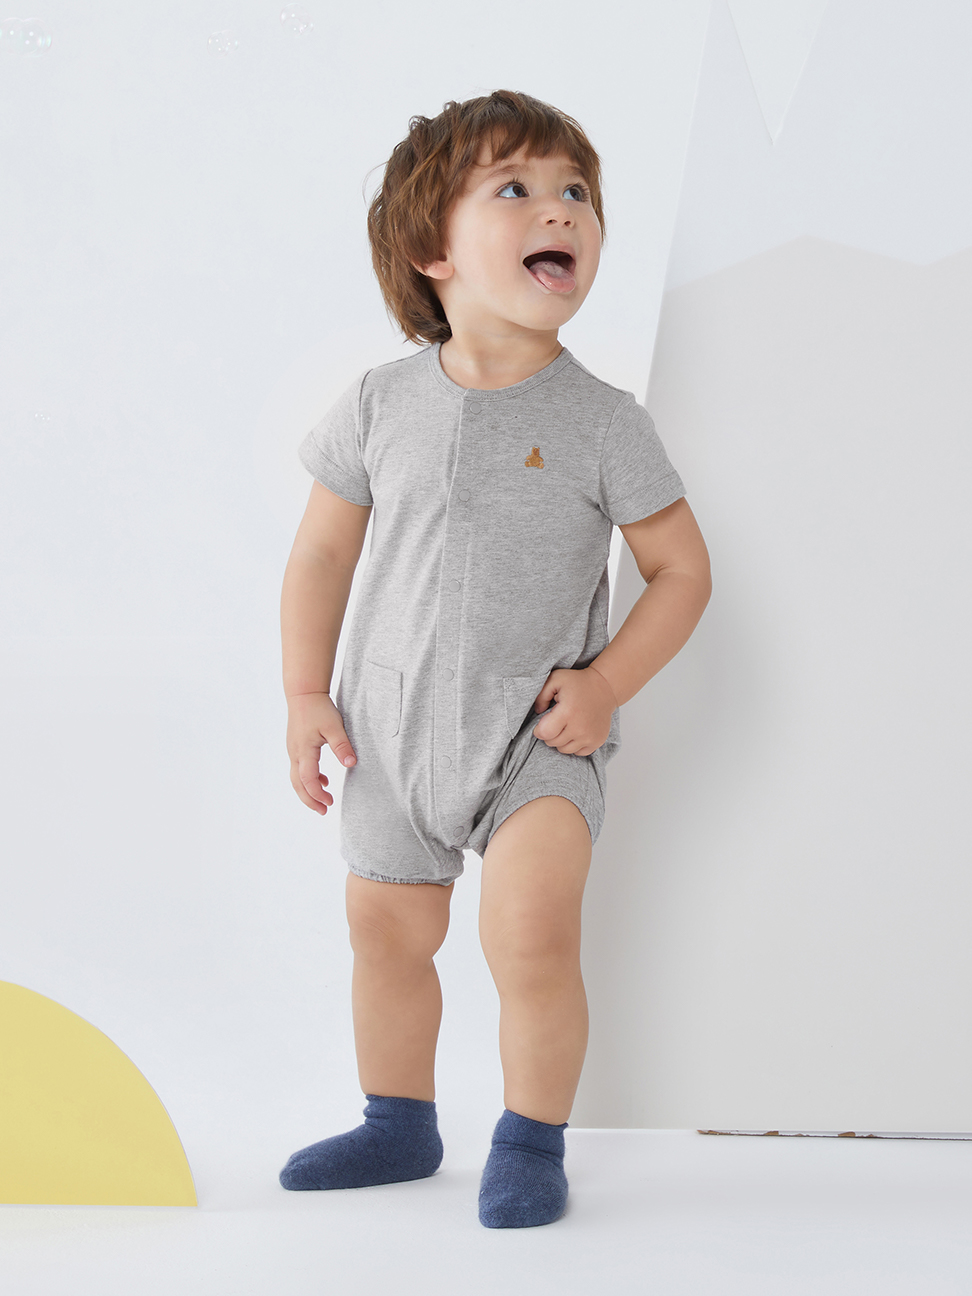 嬰兒裝|刺繡短袖包屁衣/連身衣 跟屁熊系列-淺灰色